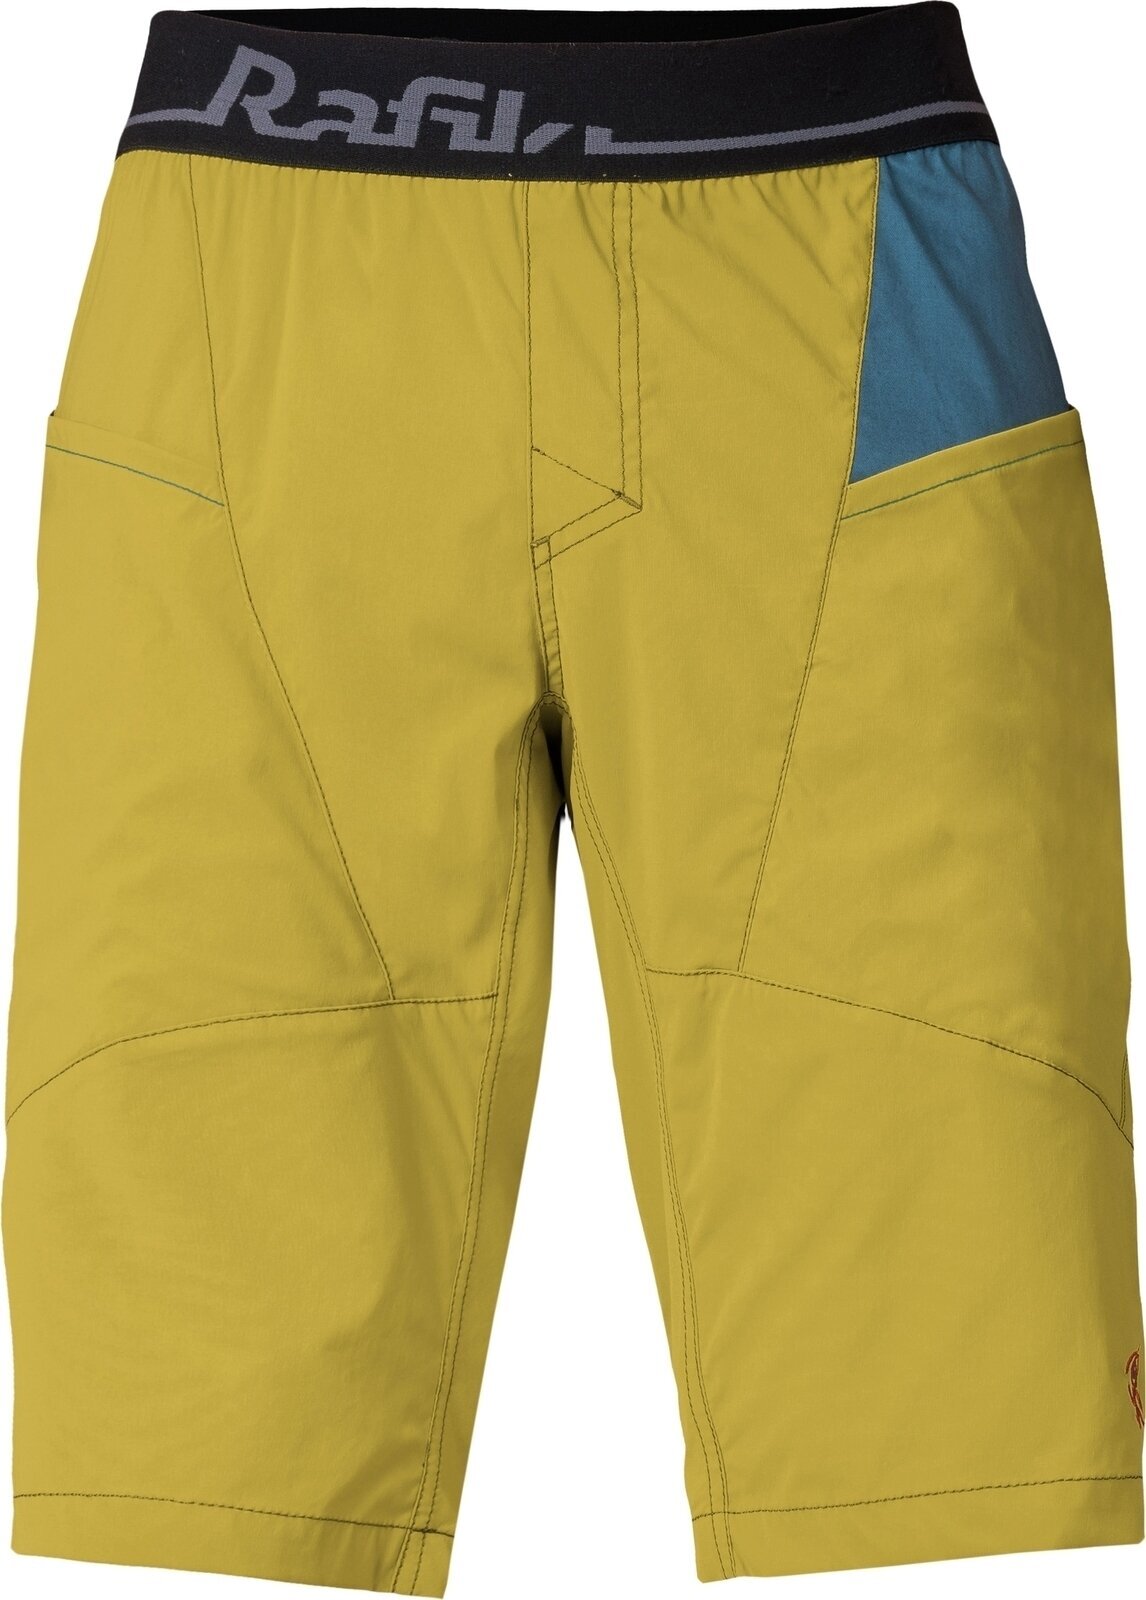 Outdoorshorts Rafiki Megos Man Shorts Cress Green/Stargazer S Outdoorshorts